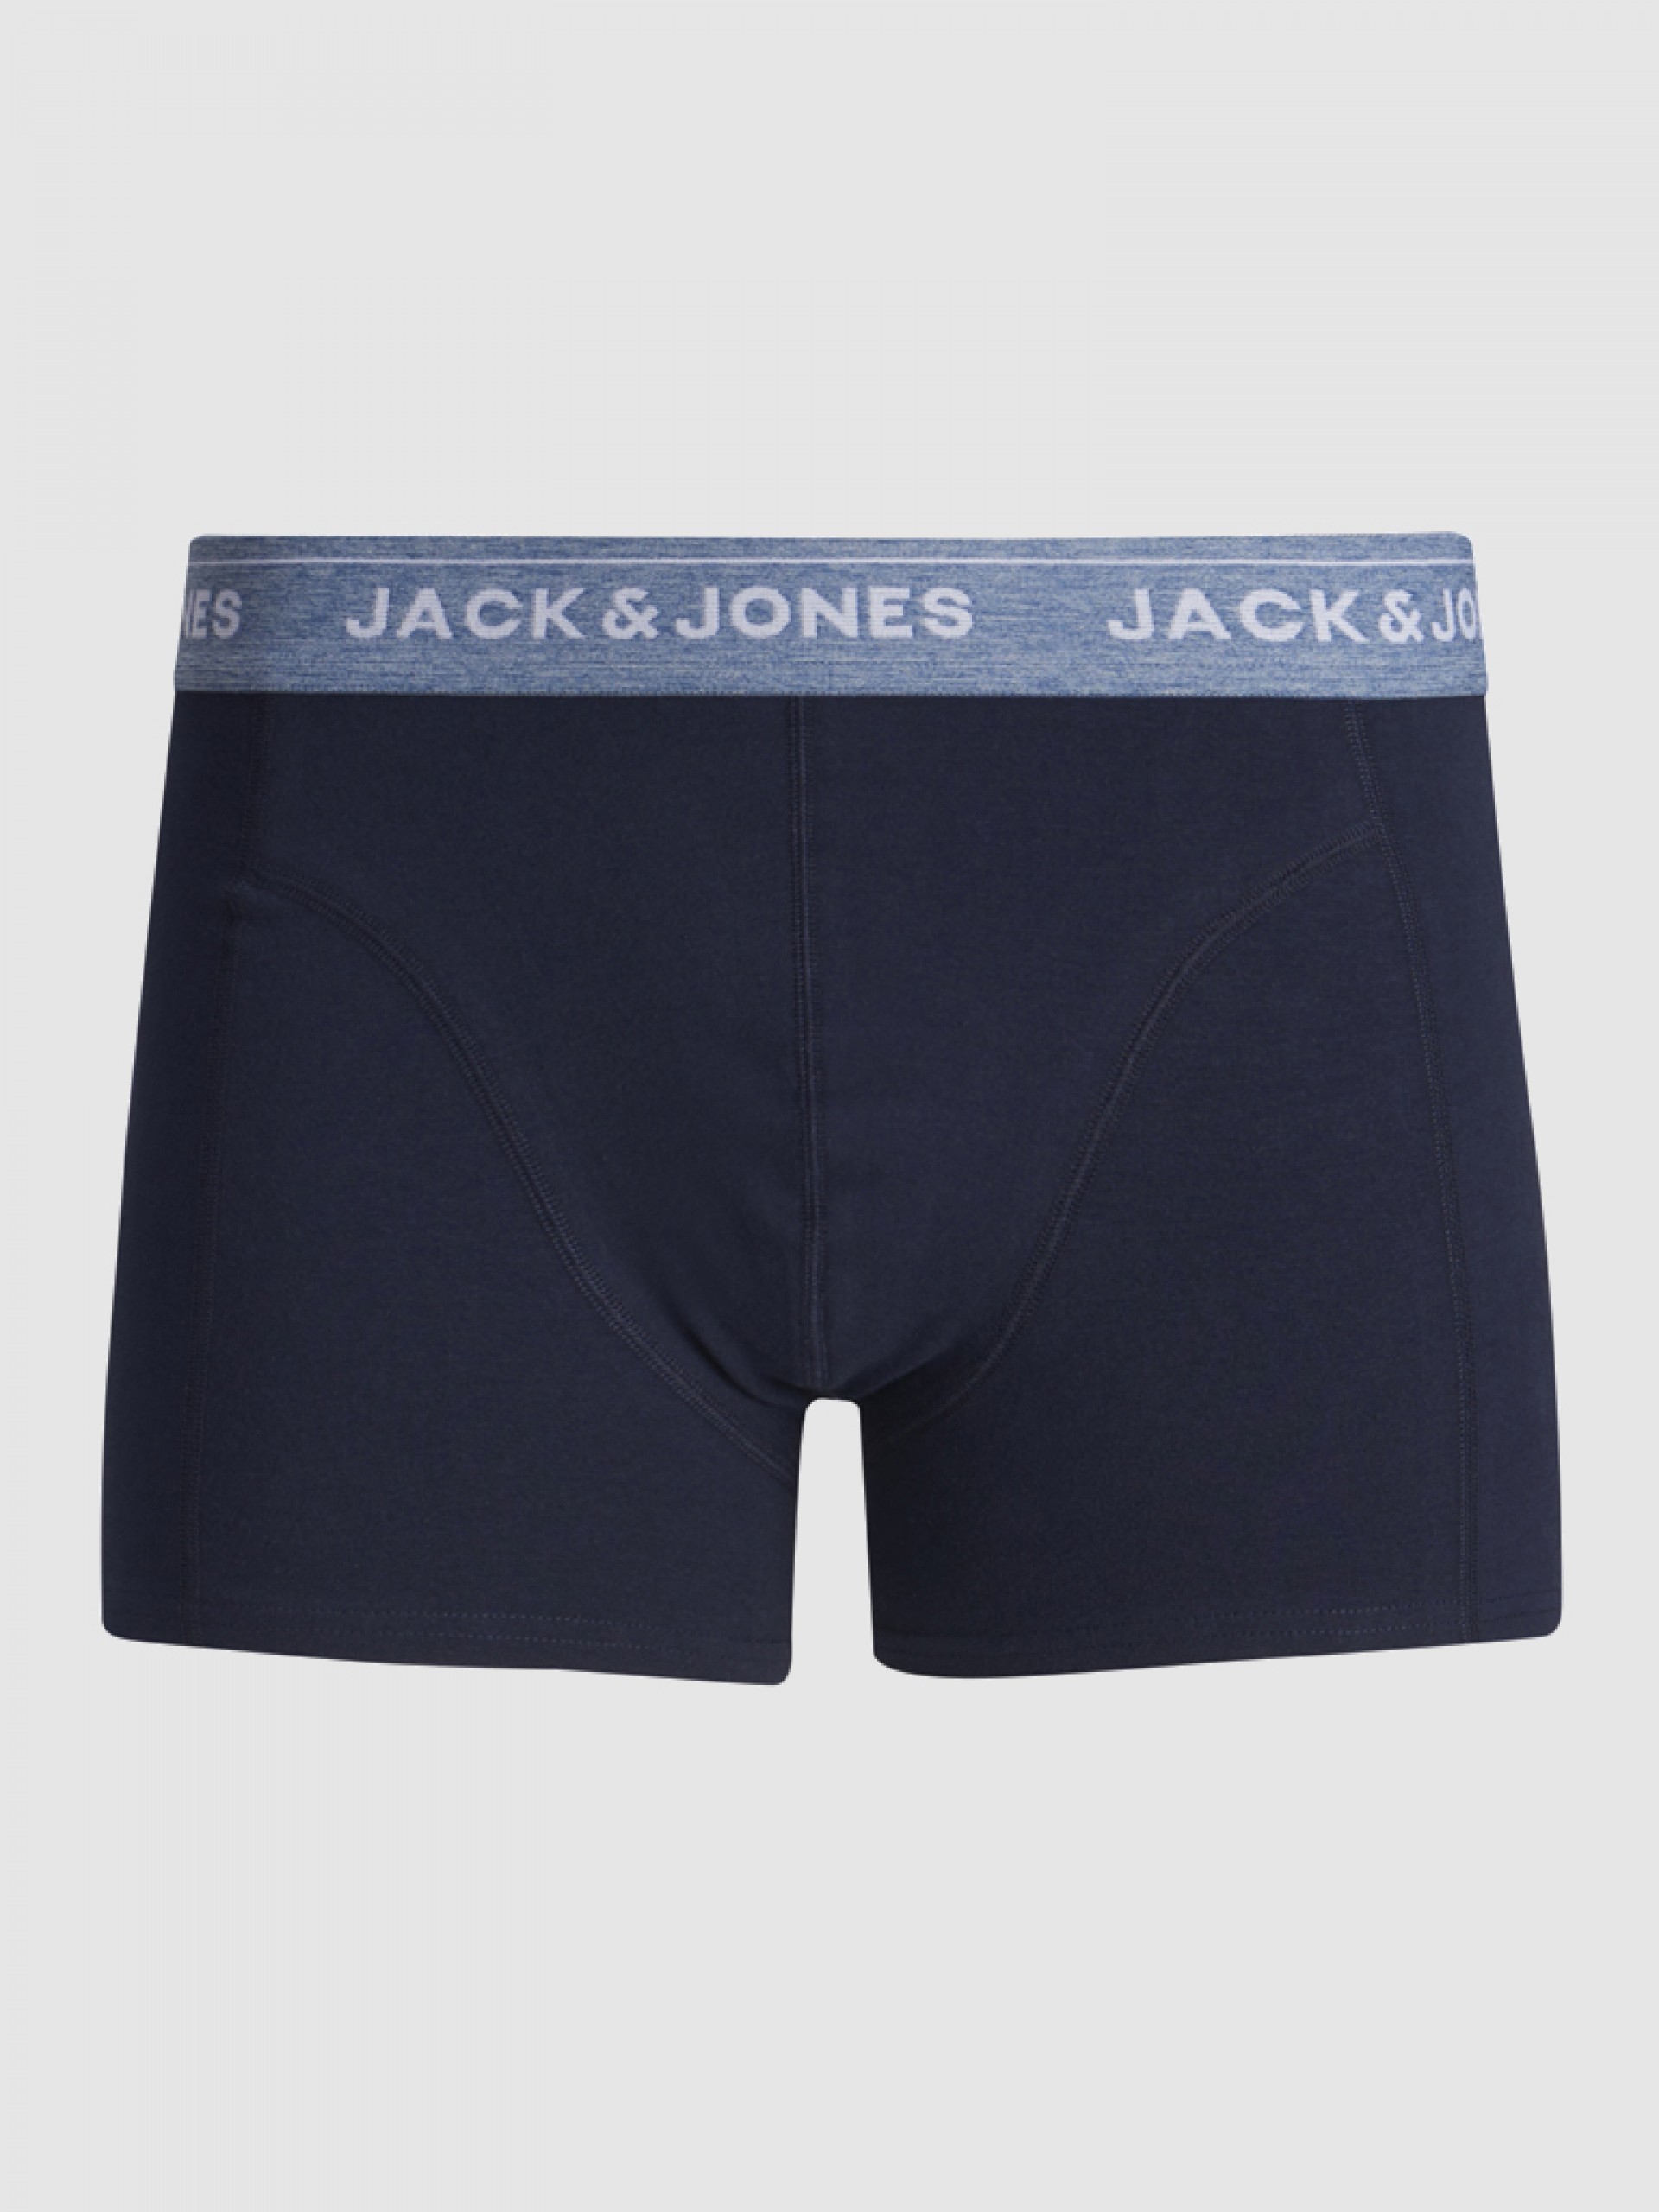 Boxer Homem Solid Jack Jones